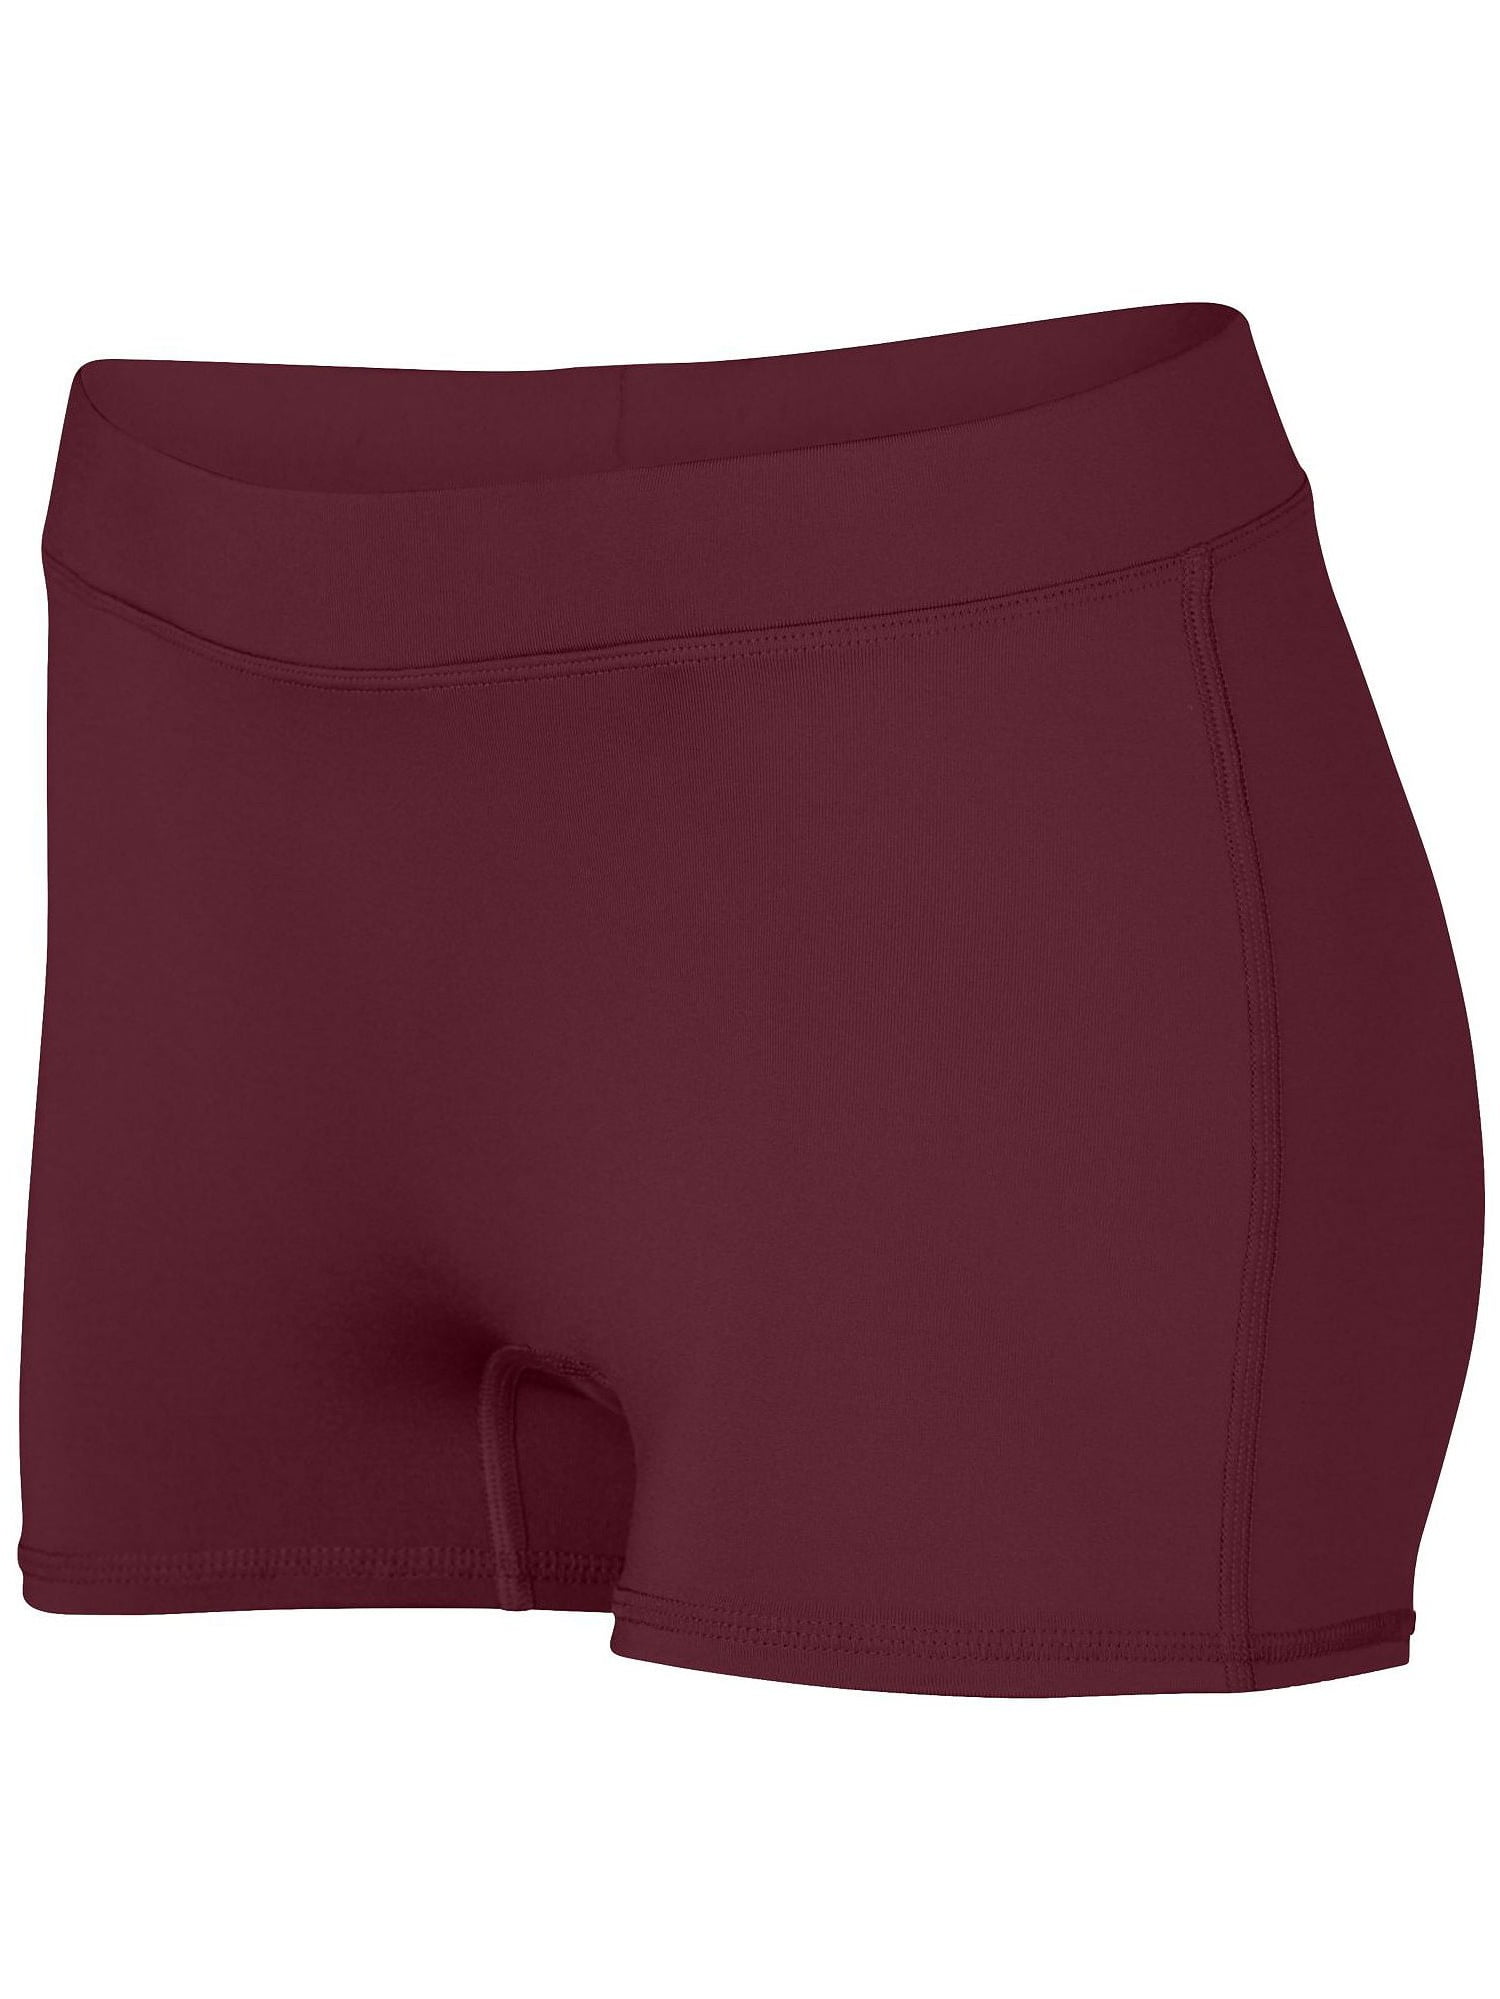 Augusta Sportswear Women's Dare Shorts - Walmart.com